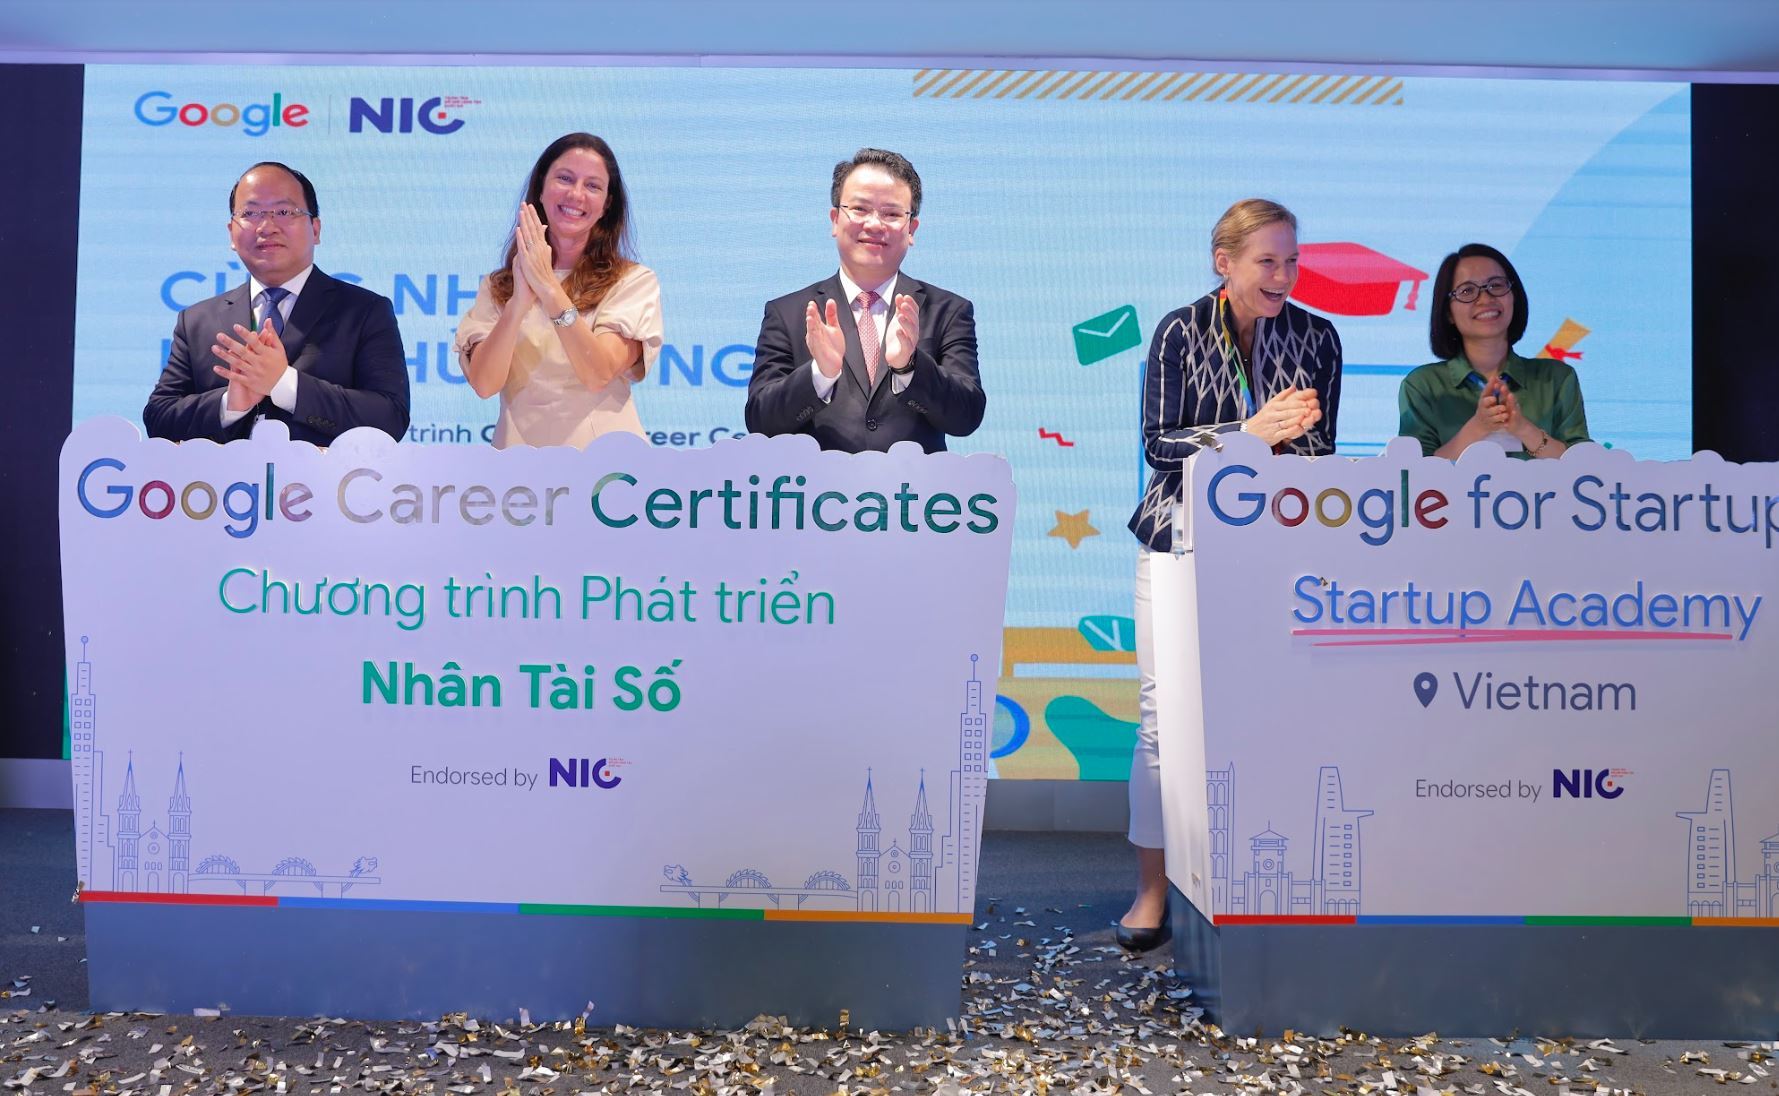 Công bố hai chương trình phát triển nhân tài số và đào tạo kỹ năng cho startup Việt